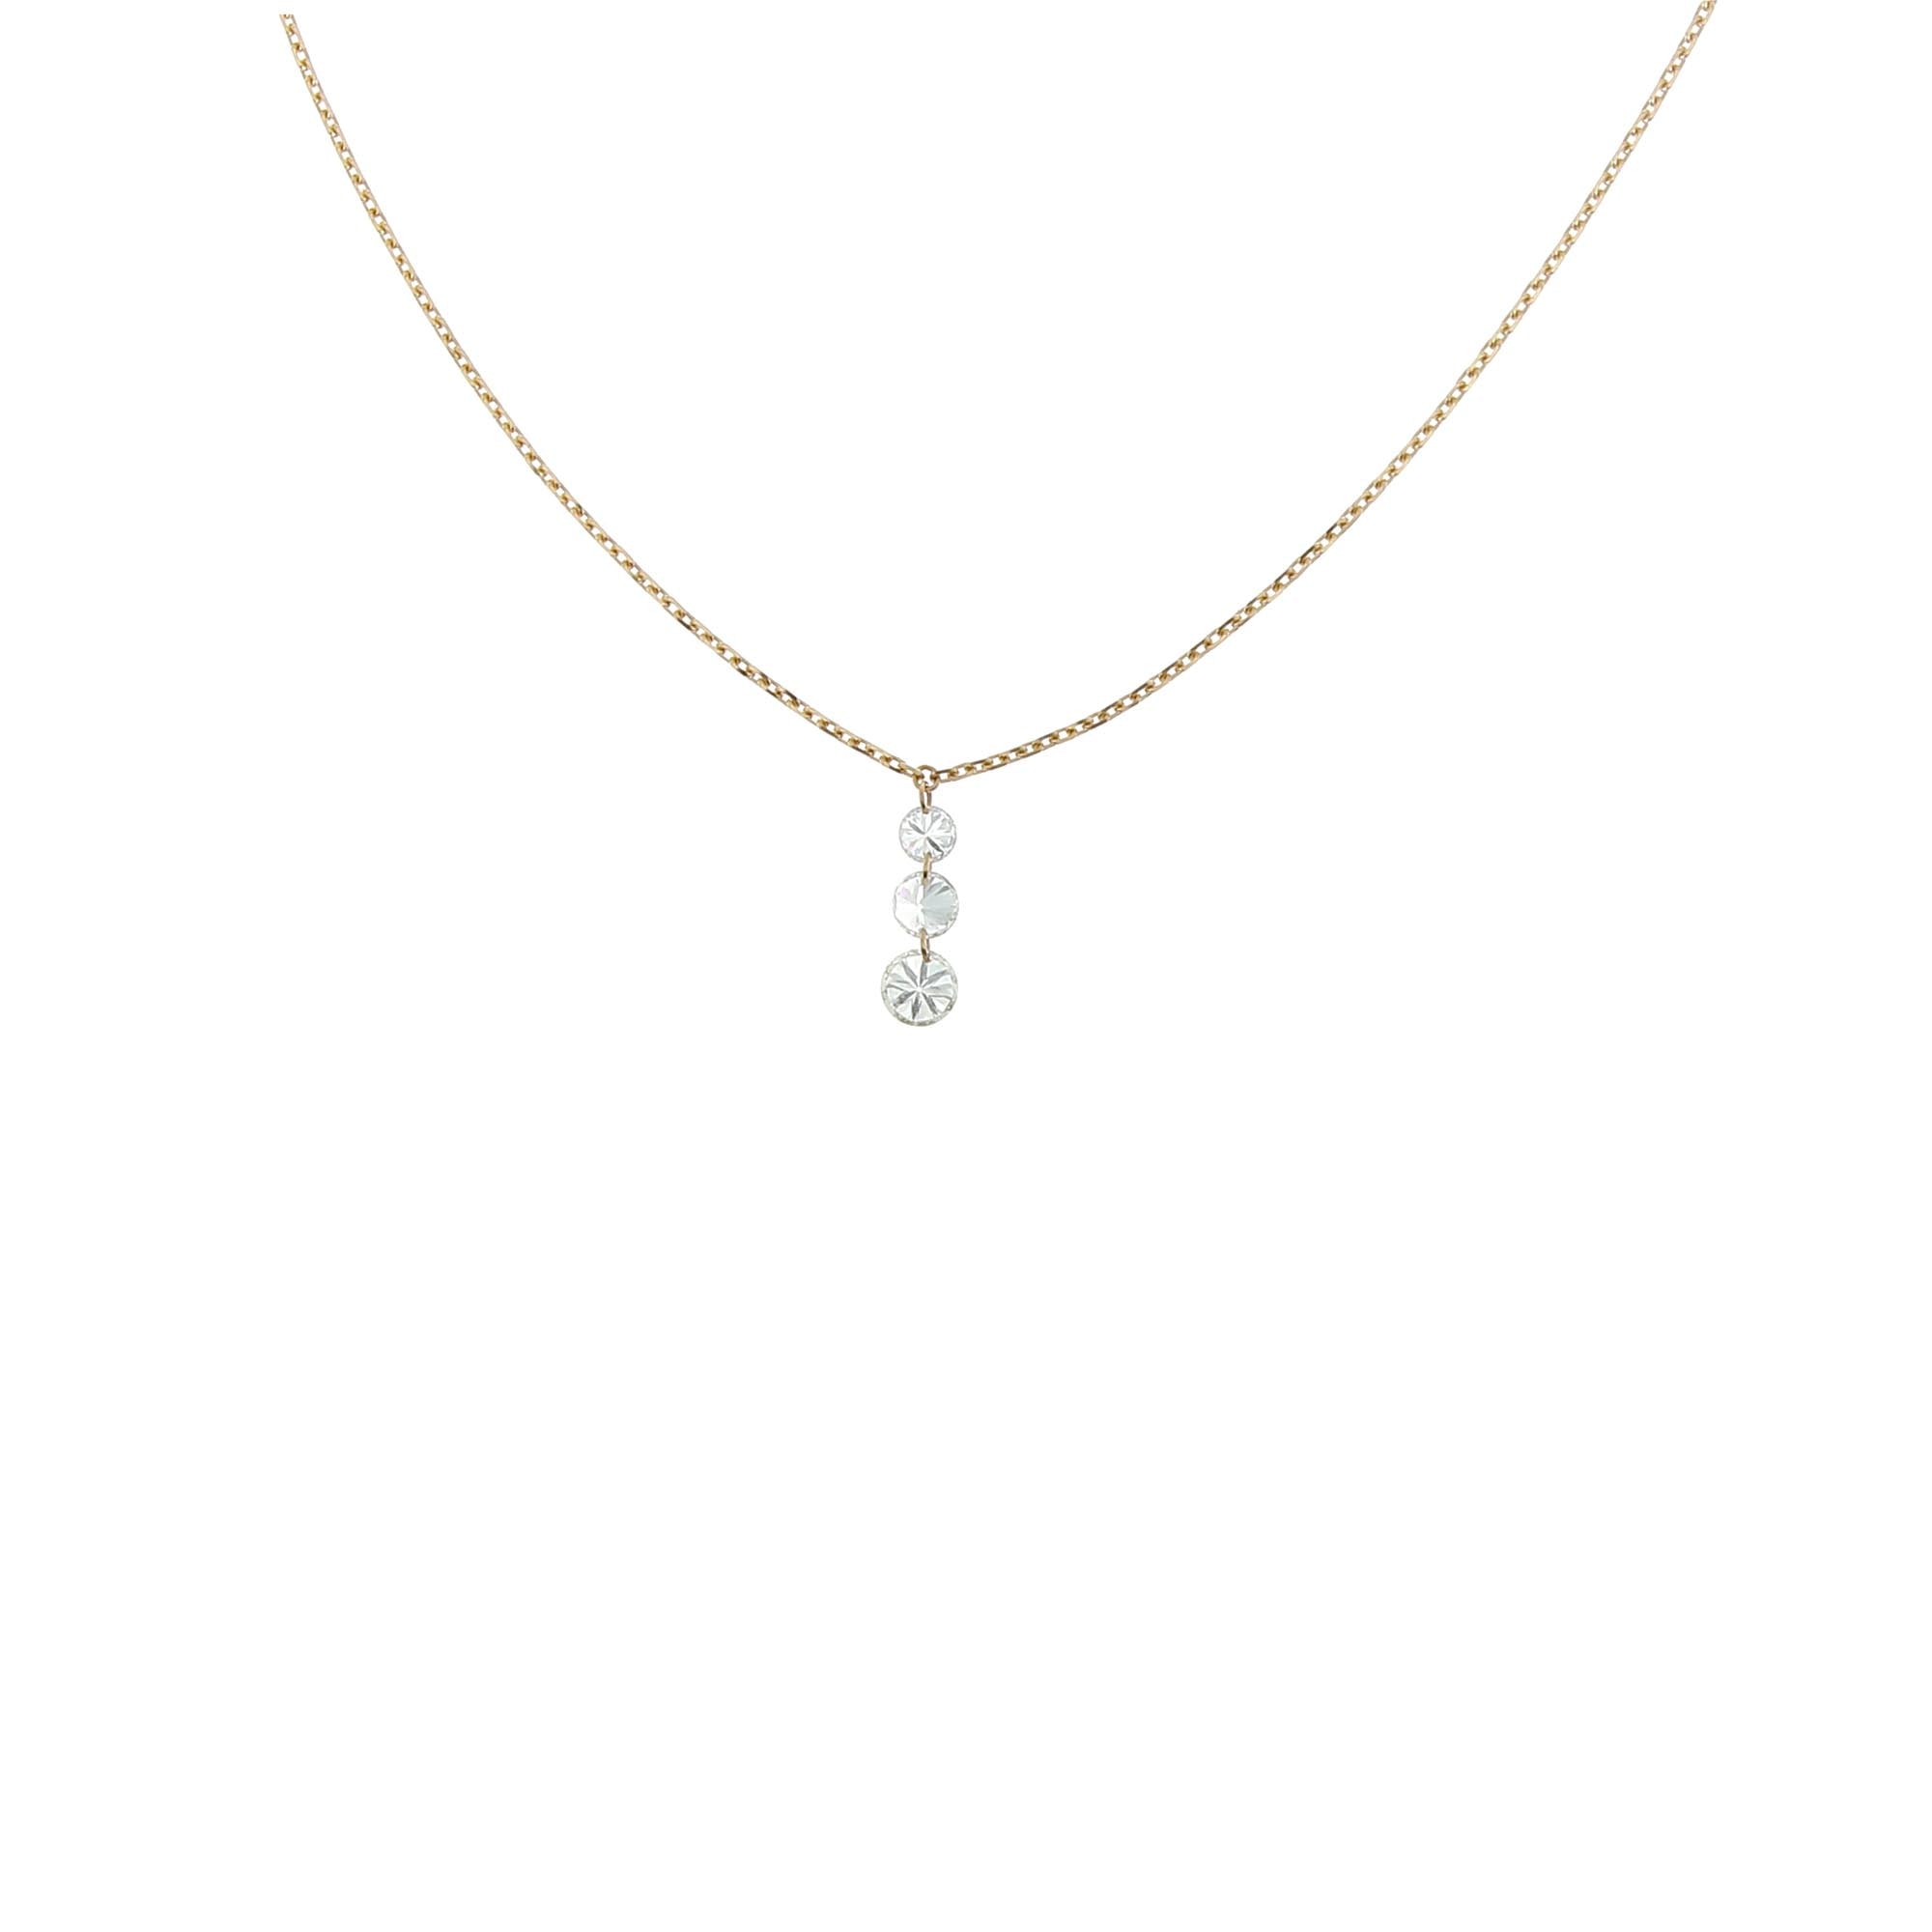 Halskette mit Farbverlauf aus Roségold mit Diamanten